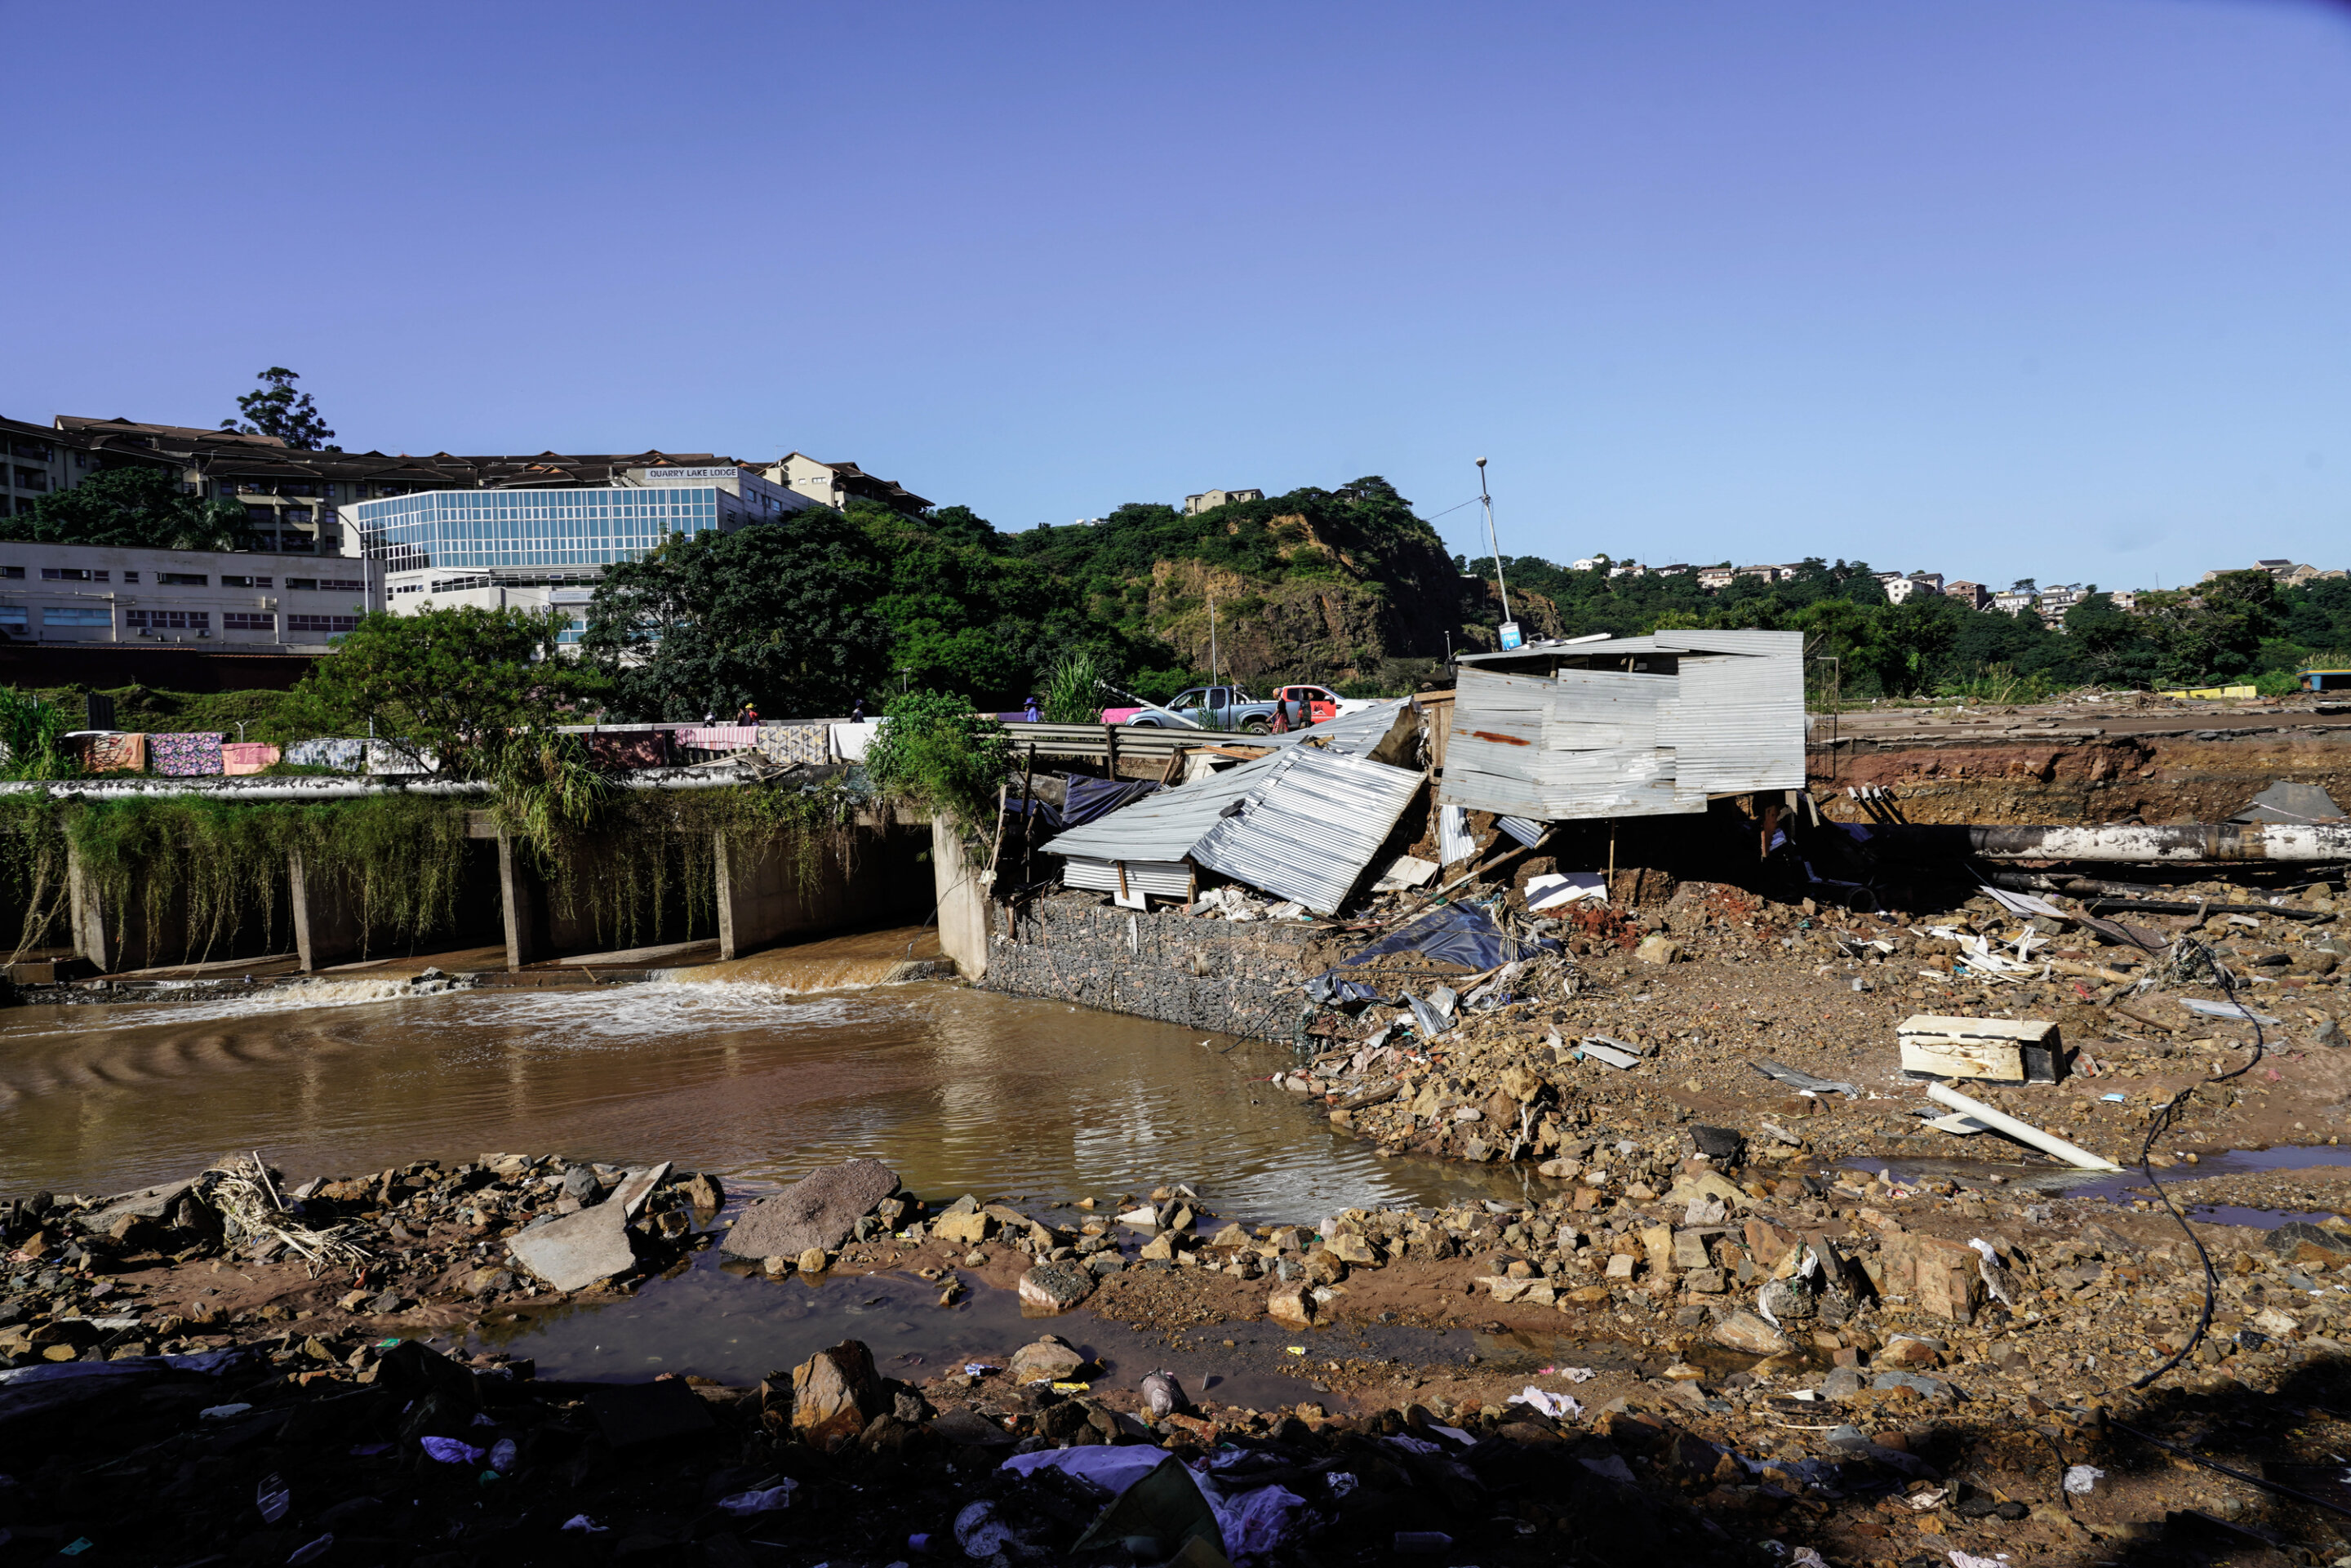 The 2022 Durban Floods 